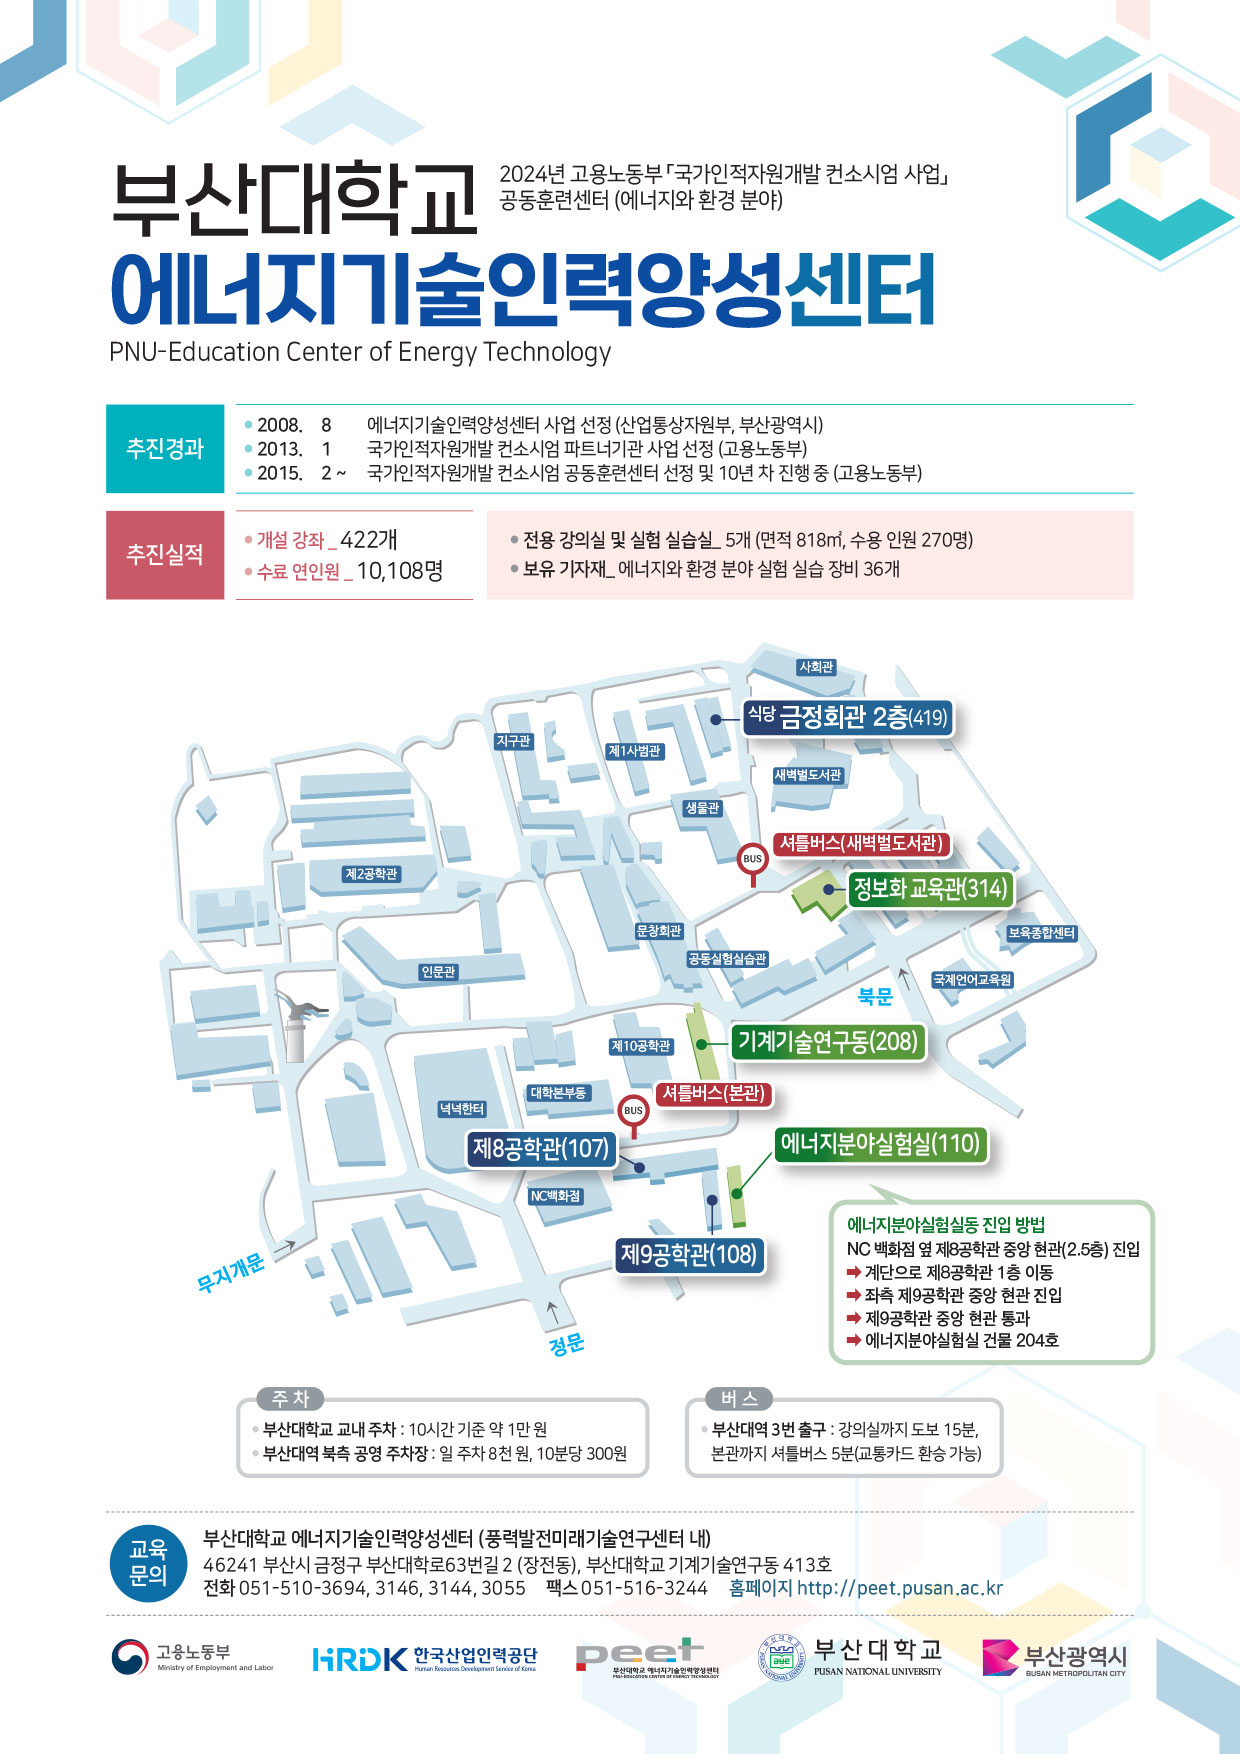 부산대학교 에너지기술인력양성센터 소개